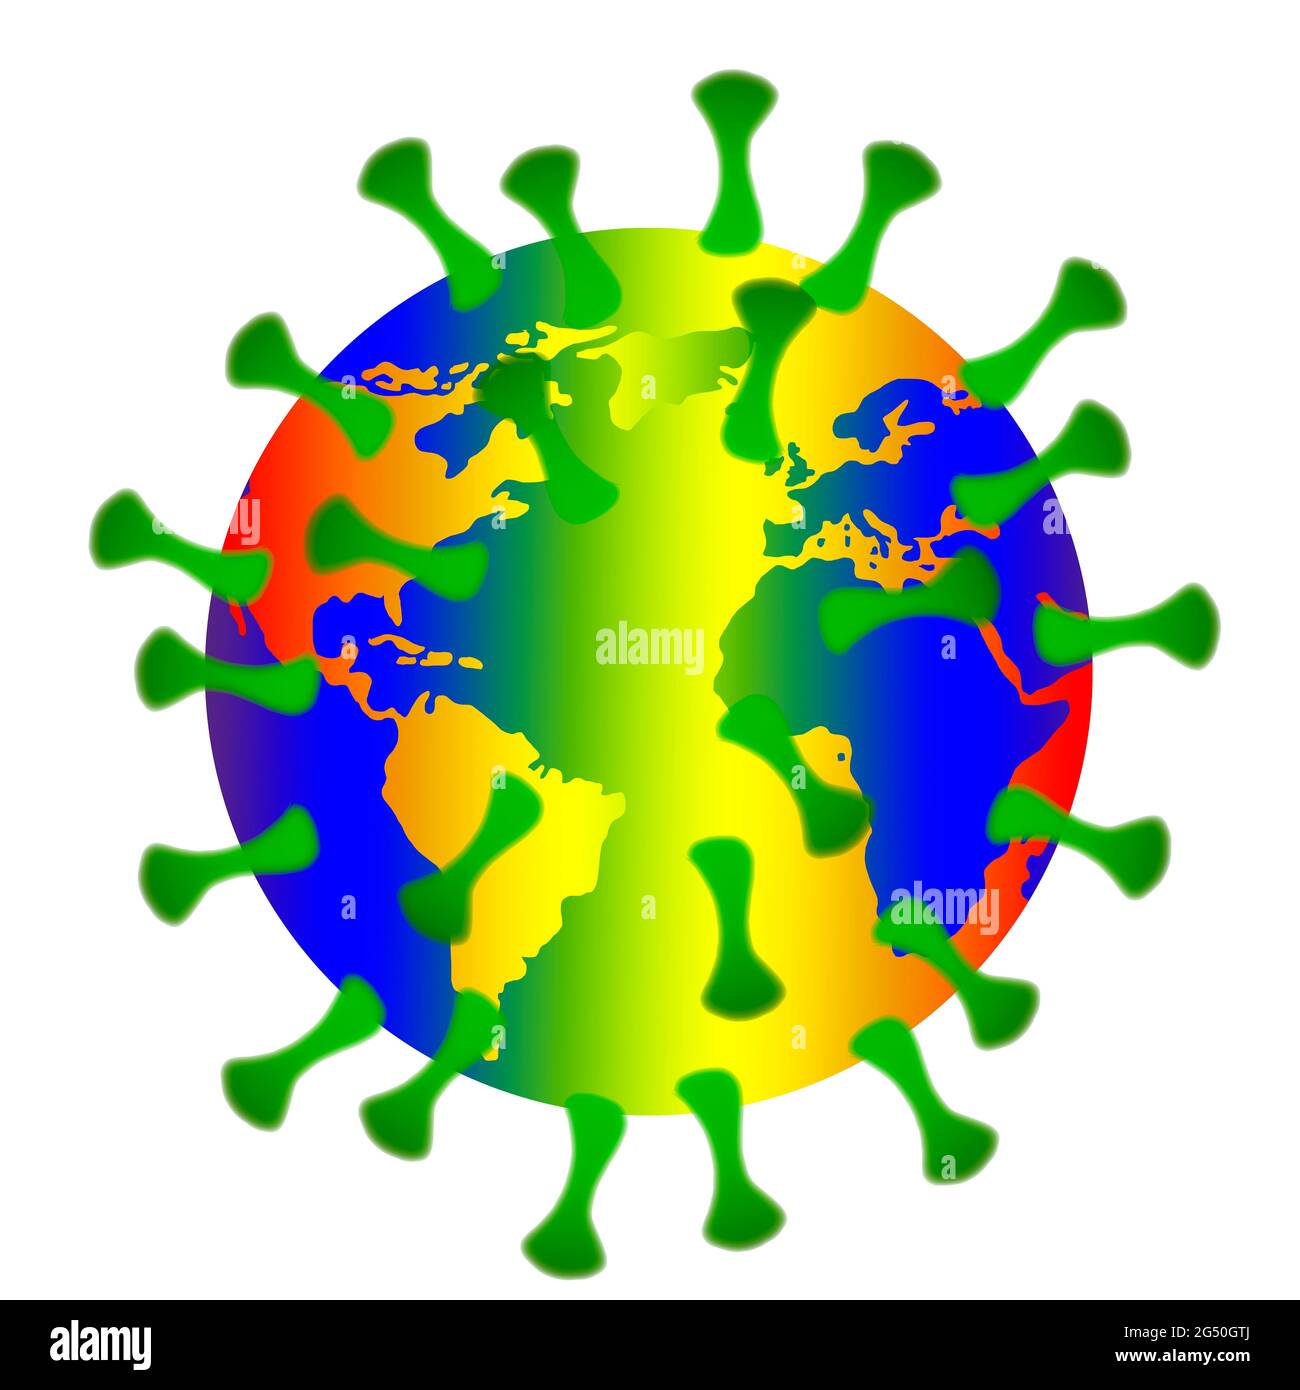 Corona Delta Virus Ilustration mit der Erde, in Regenbogen Farben - Zeichen für Toleranz und Gleichheit Stock Photo